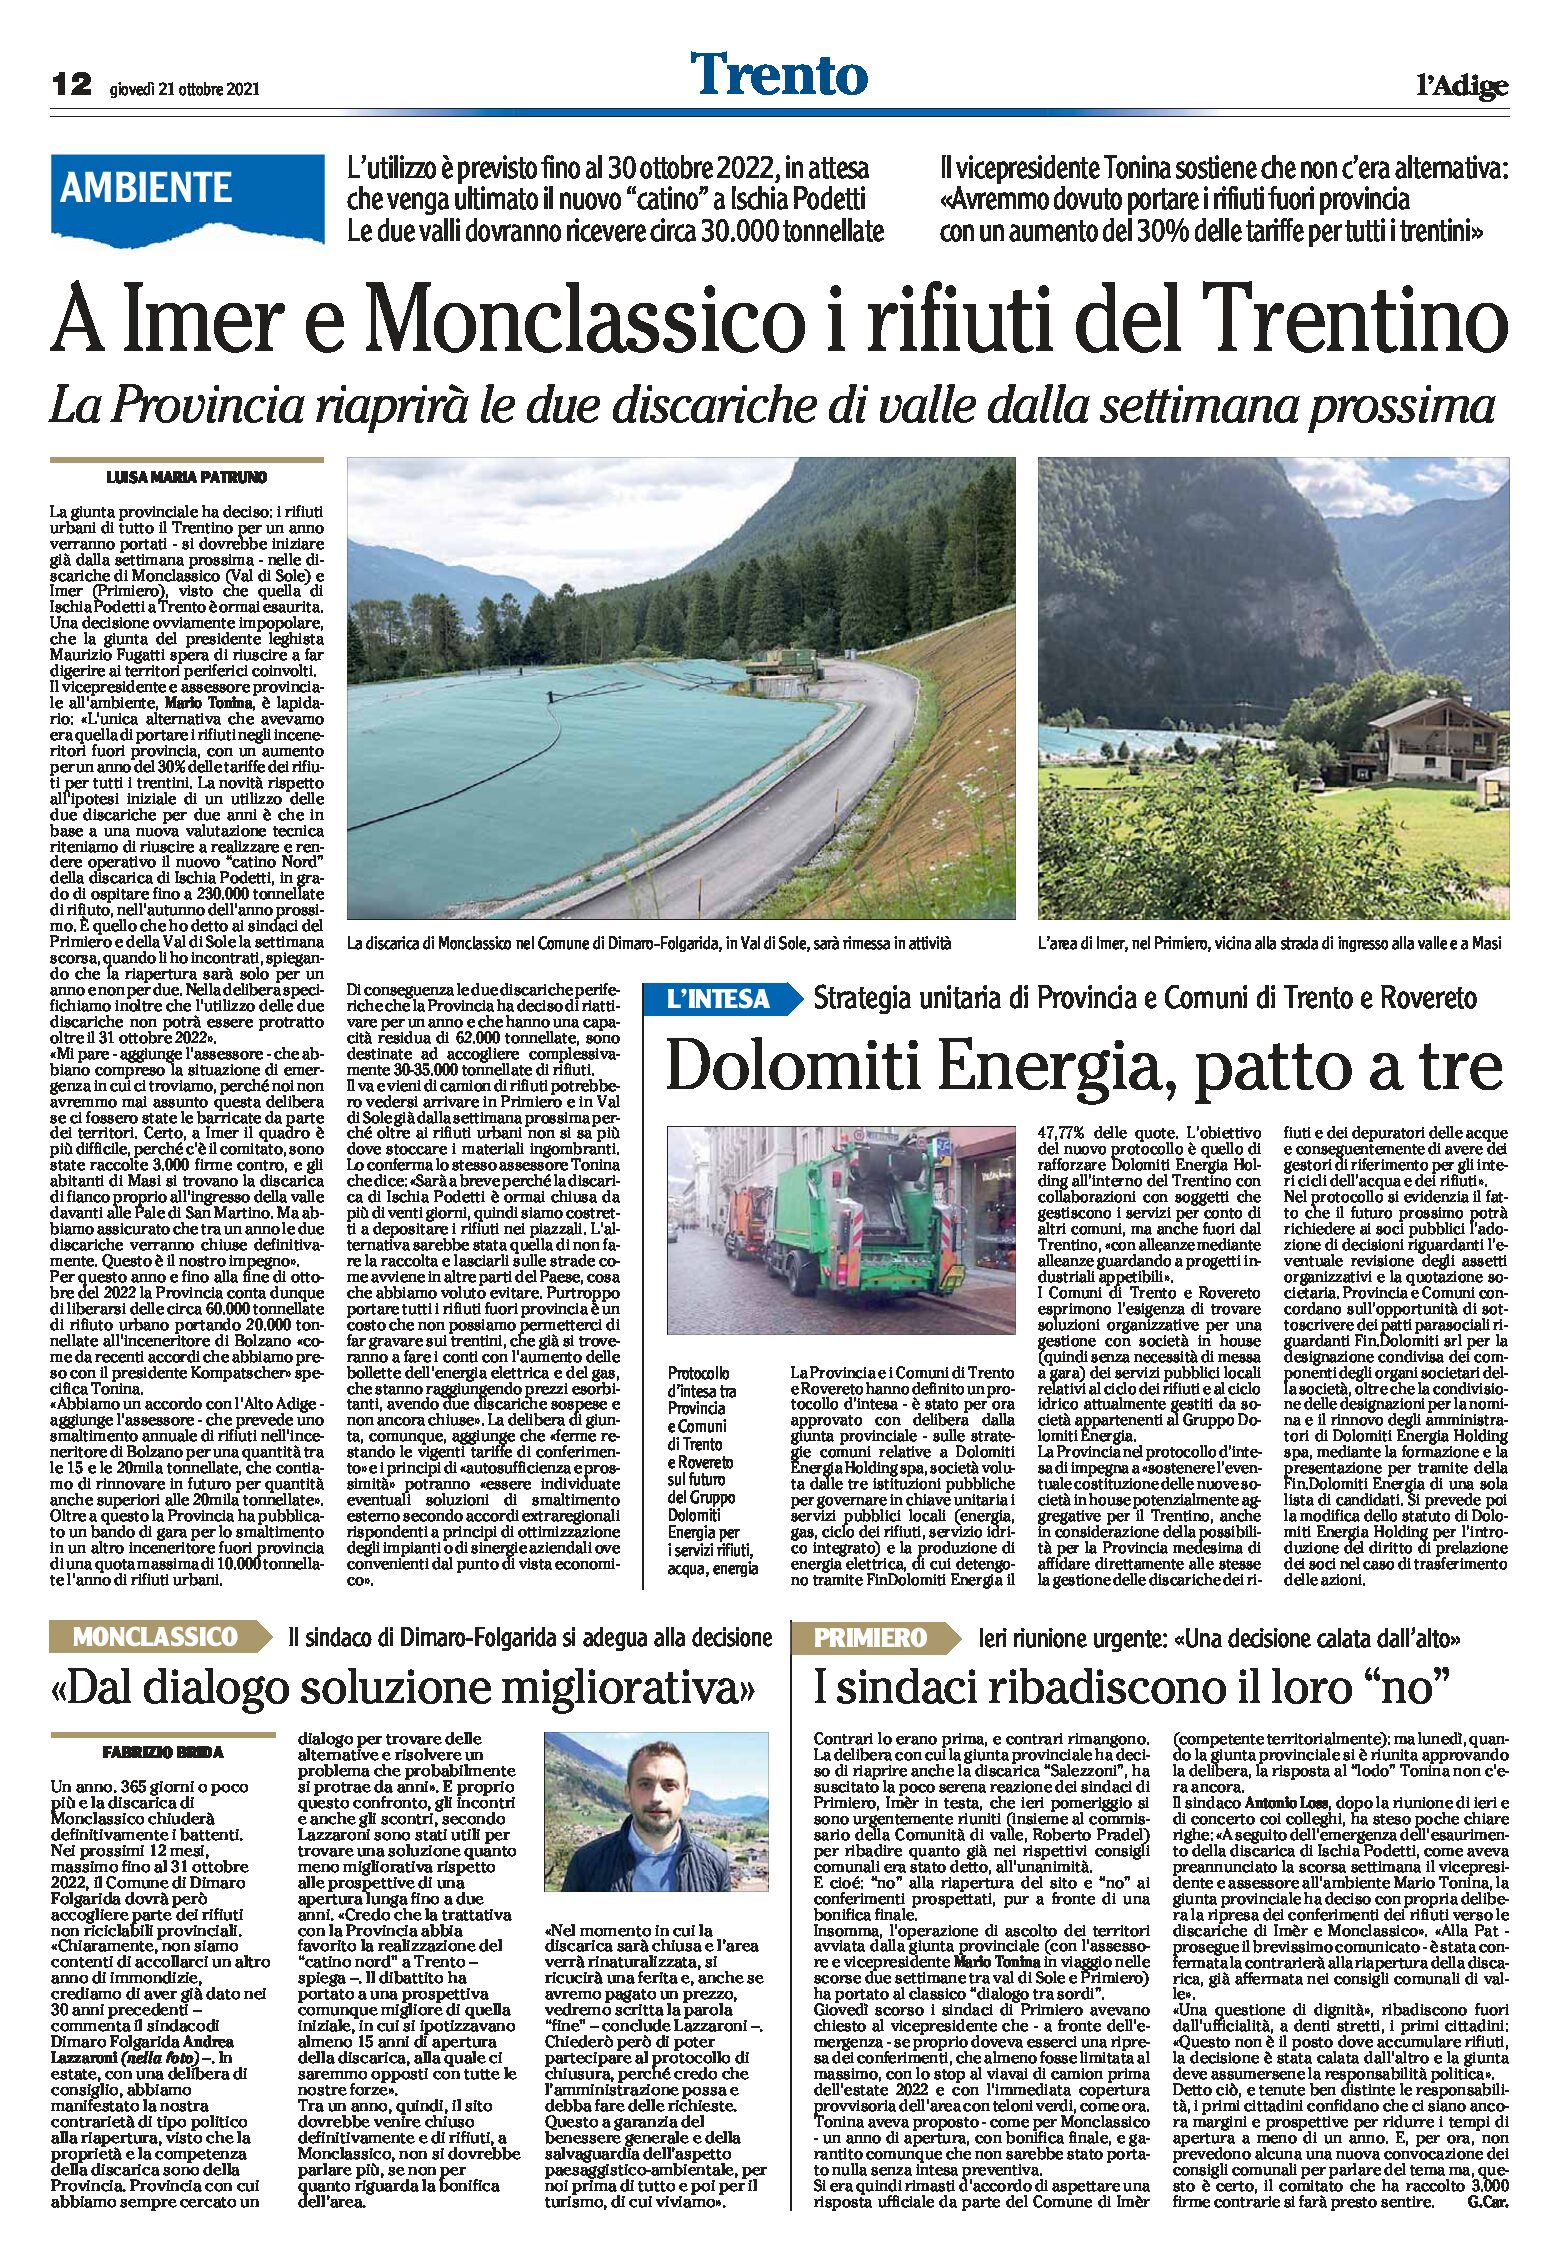 Ambiente: a Imer e Monclassico i rifiuti del Trentino